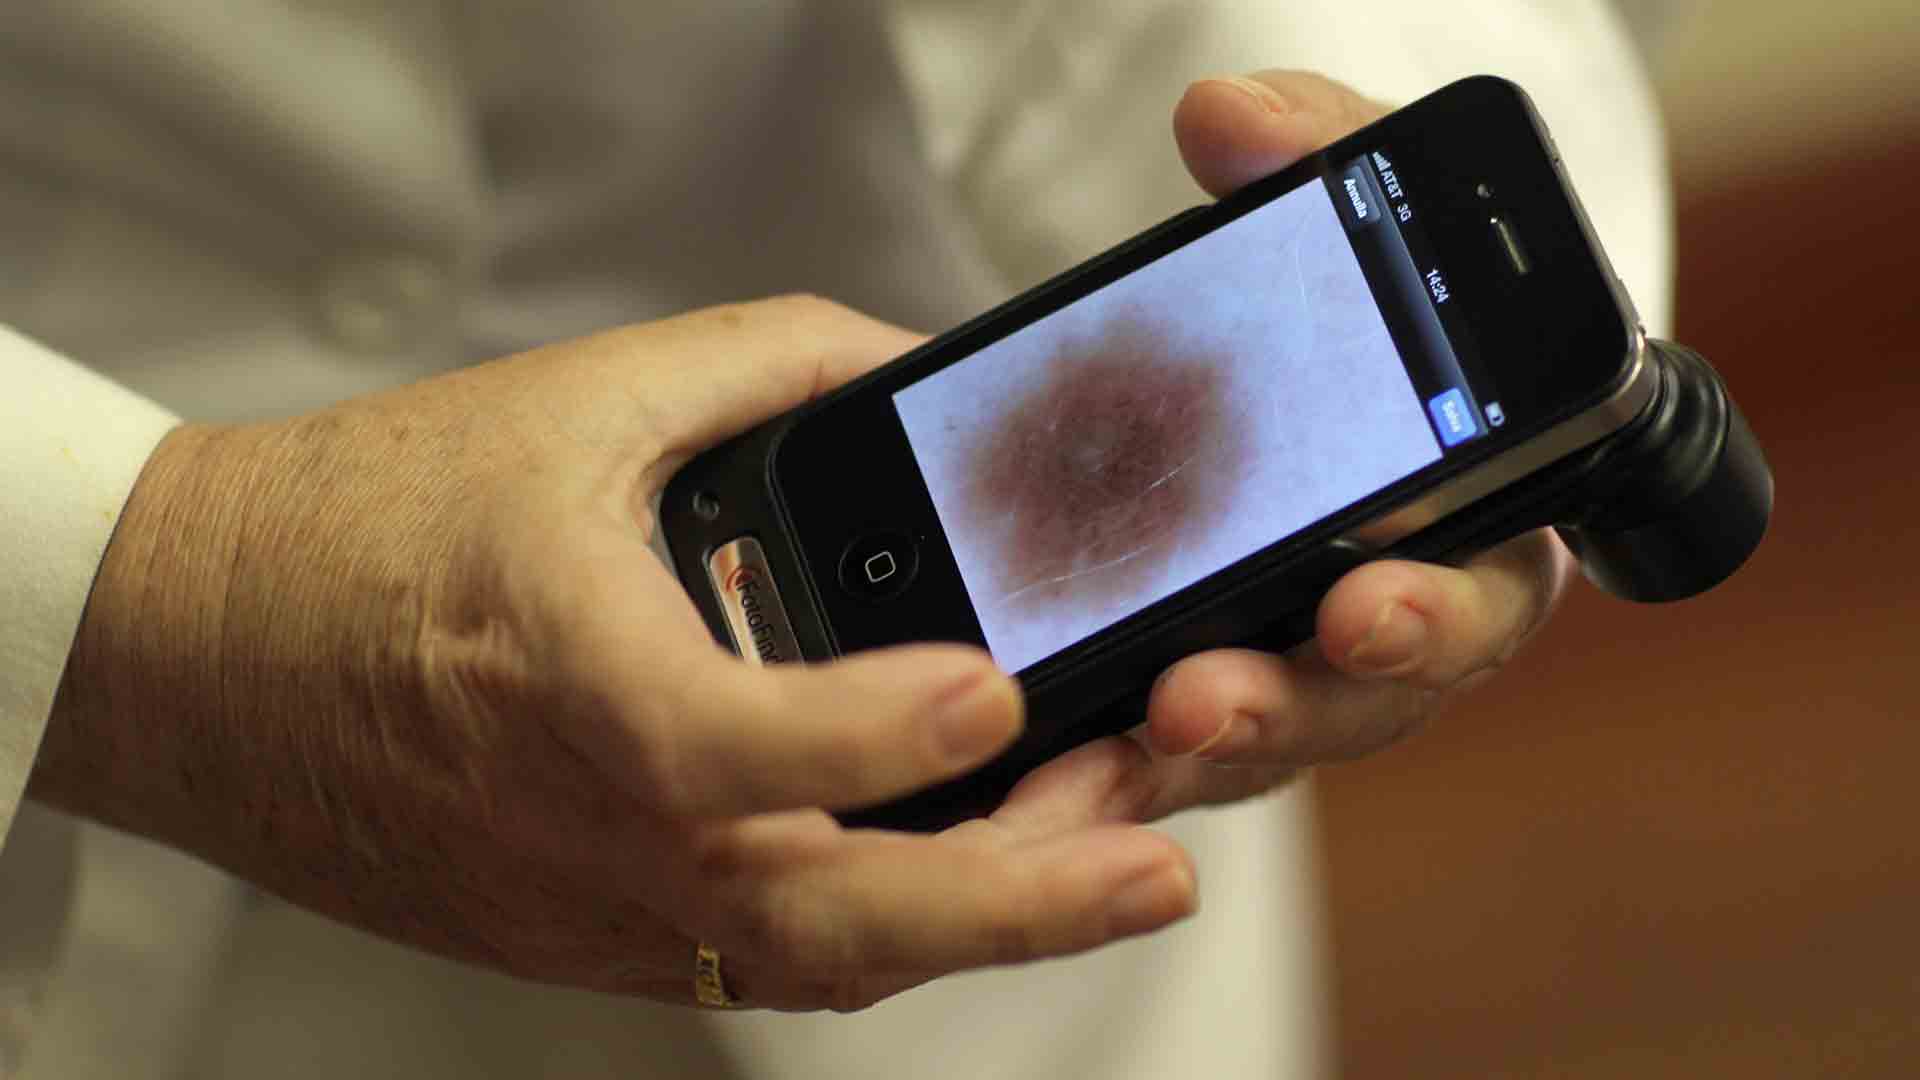 Smartphone pics may be sharp enough for dermatology diagnosis